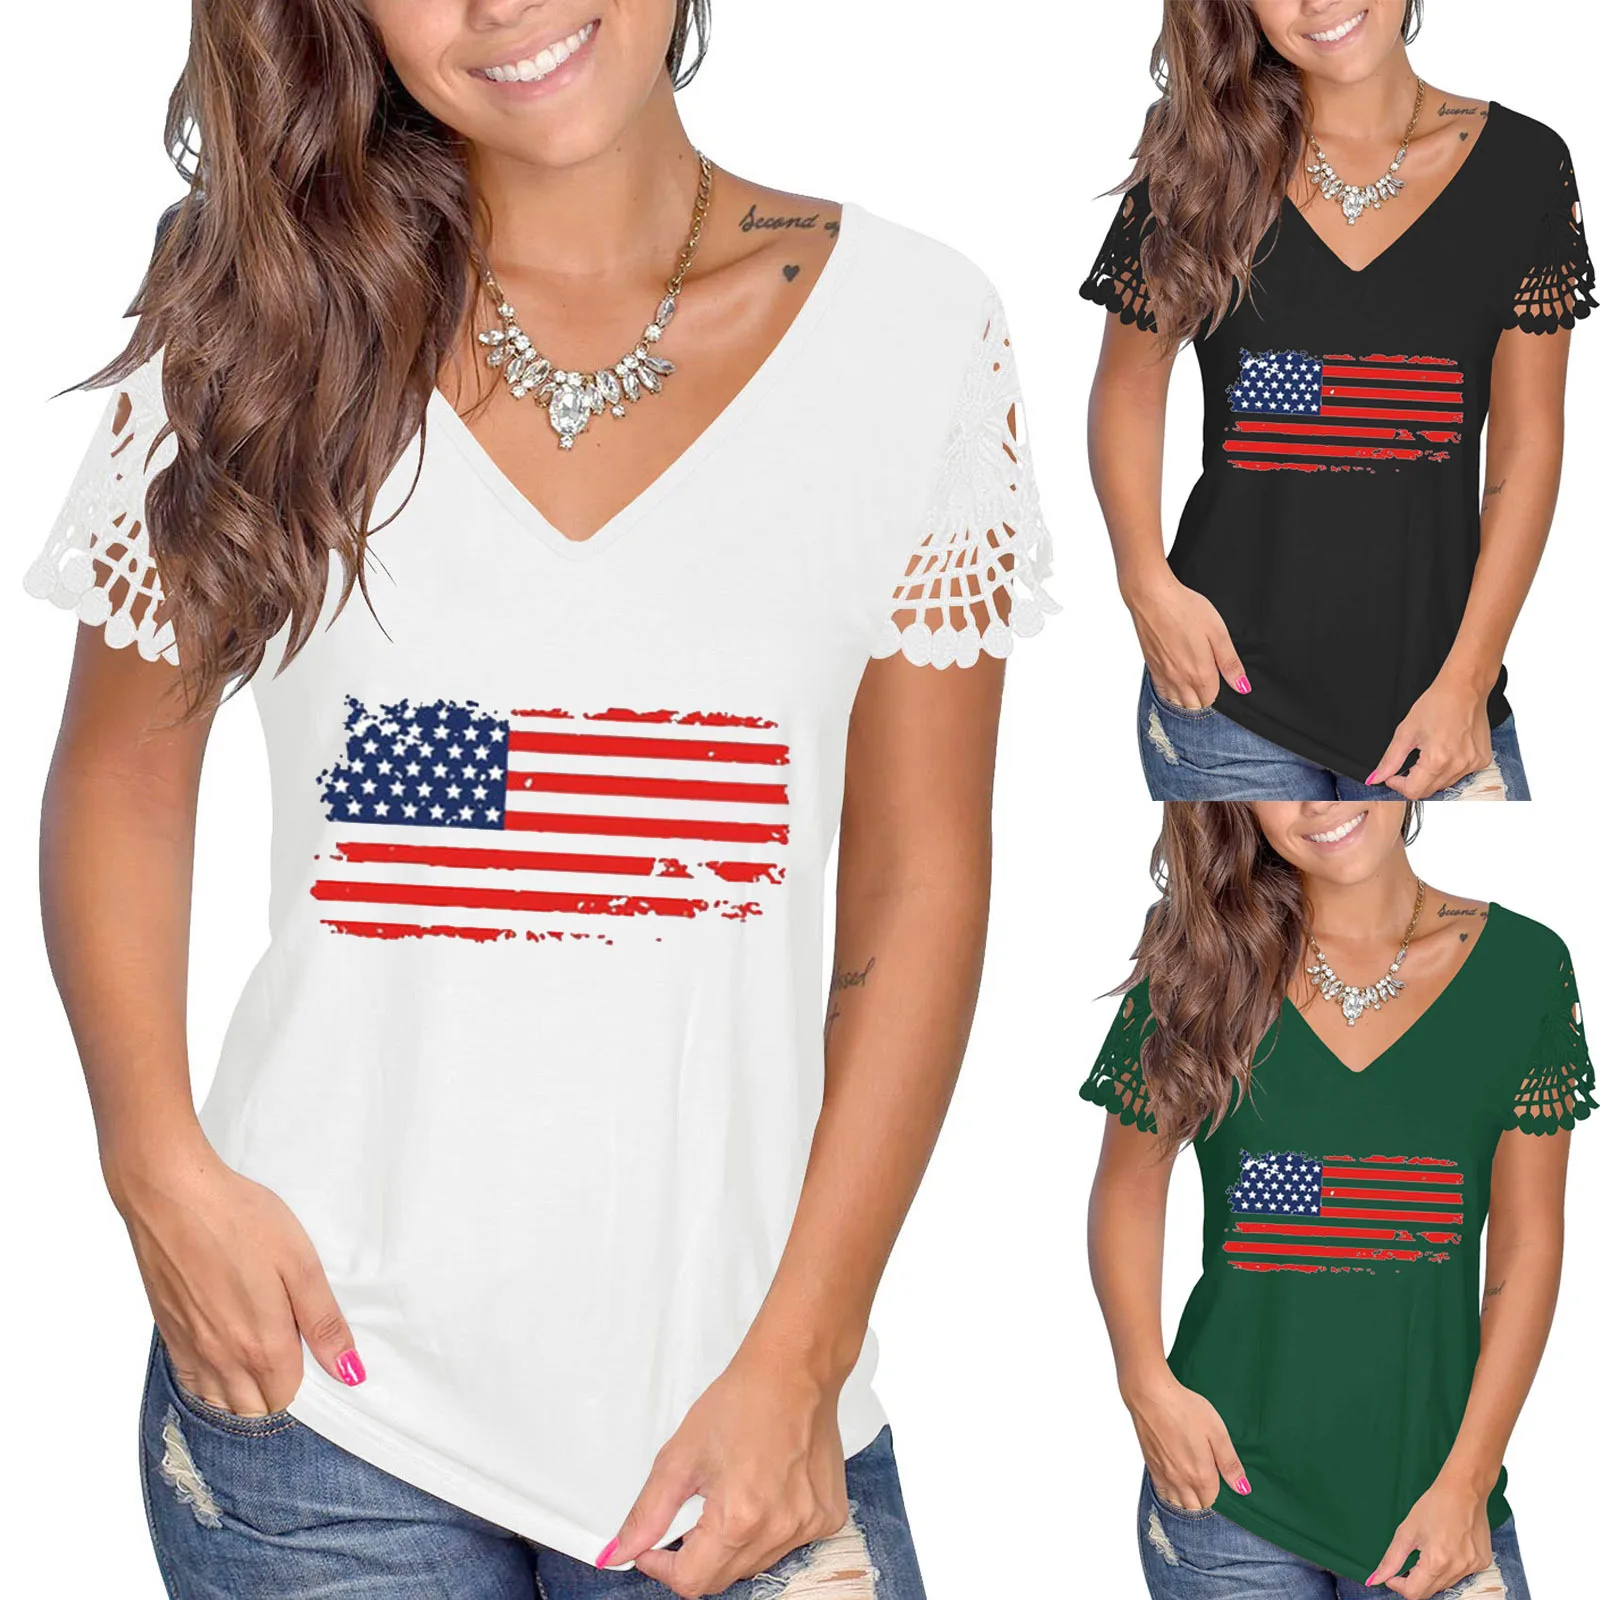 

4 июля патриотические украшения Модные топы День Независимости Лето V-образный вырез кружевные рукава американский флаг Повседневная футболка для женщин